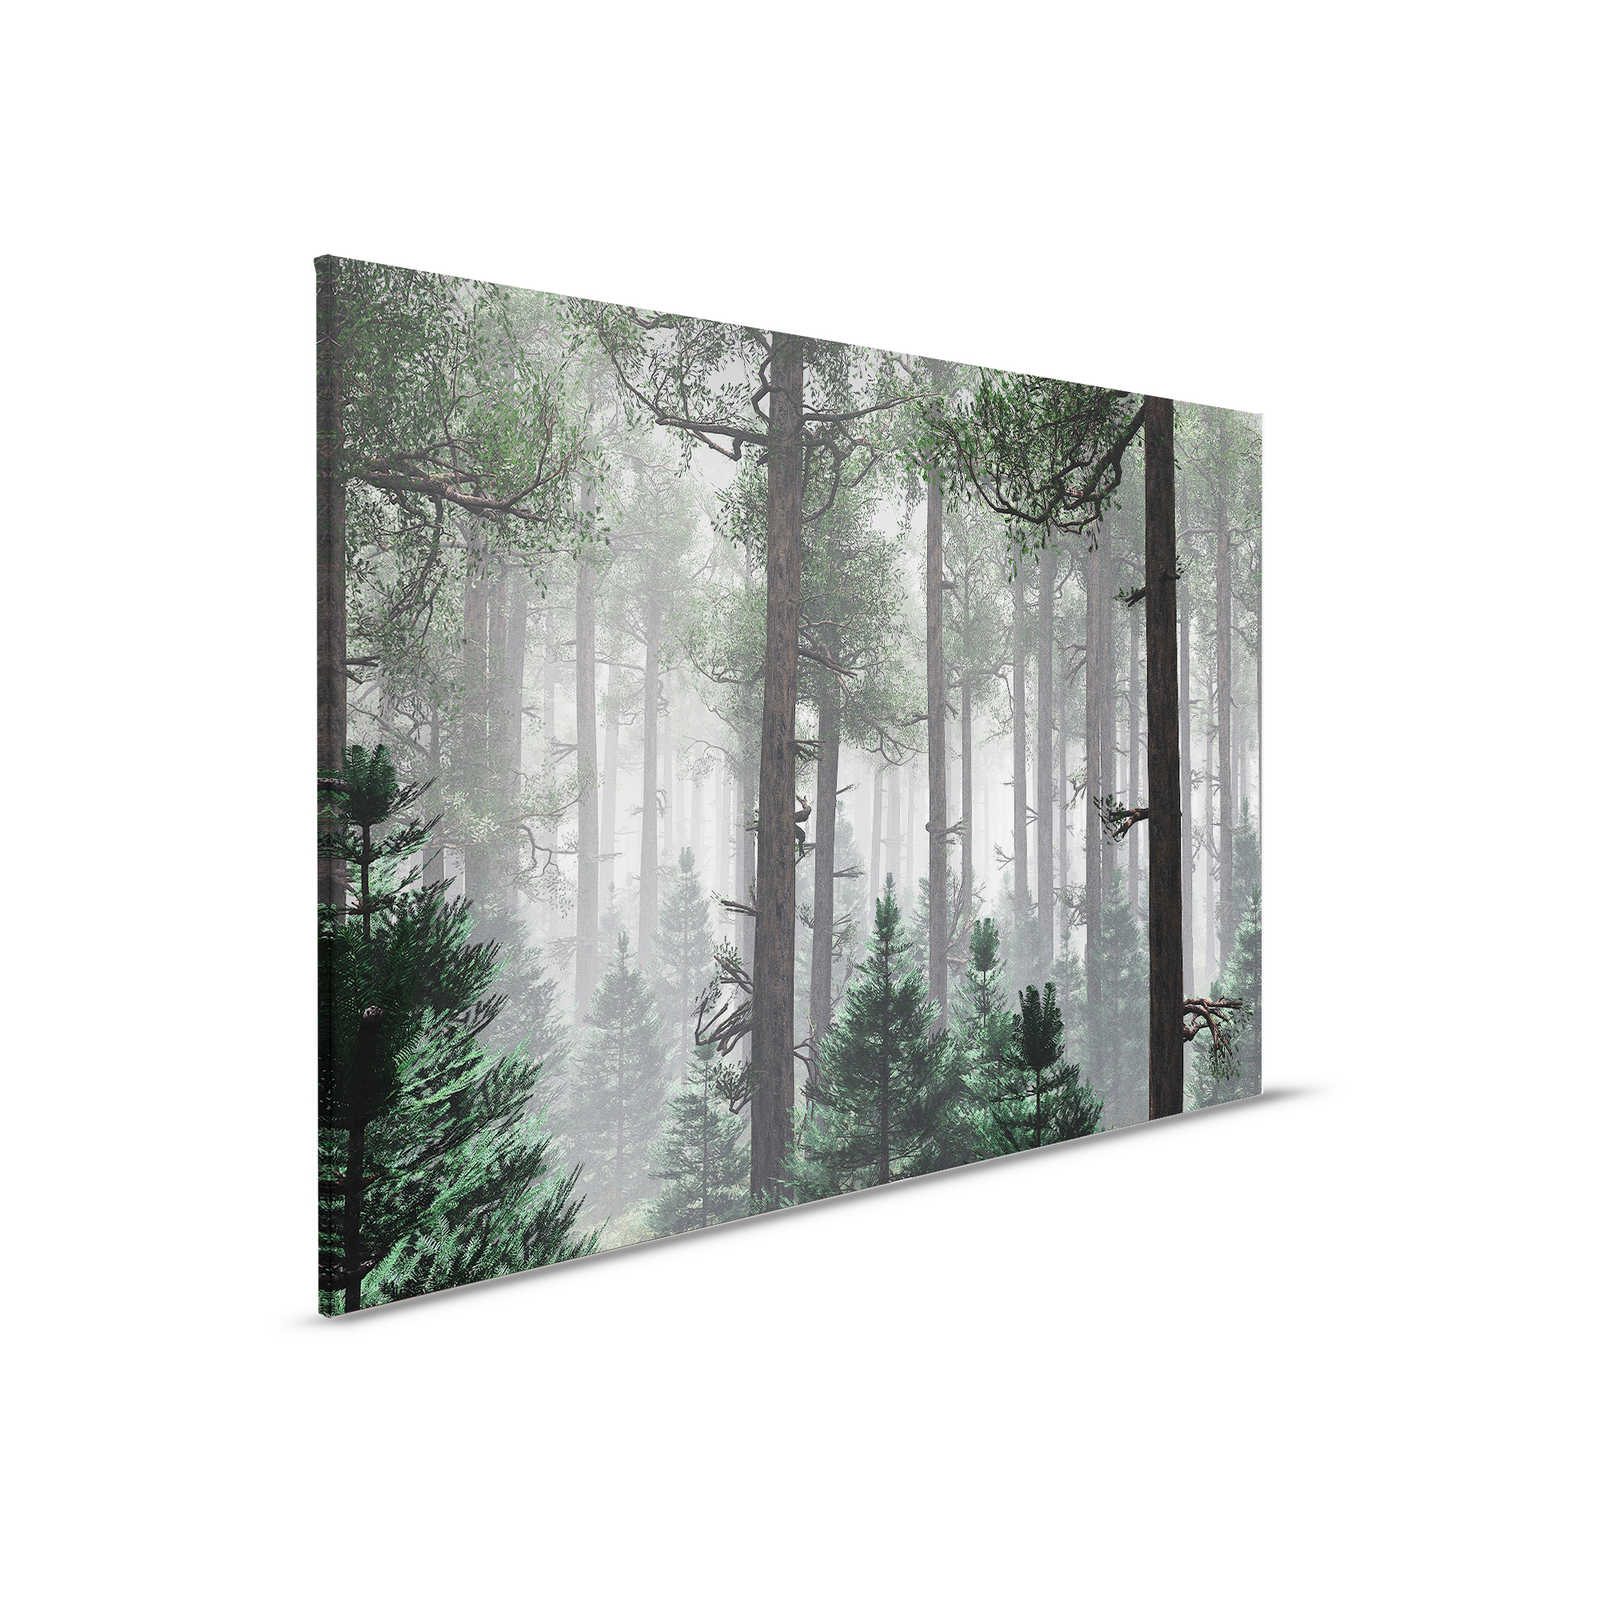         Leinwandbild Wald im Nebel mit großen Bäumen – 0,90 m x 0,60 m
    